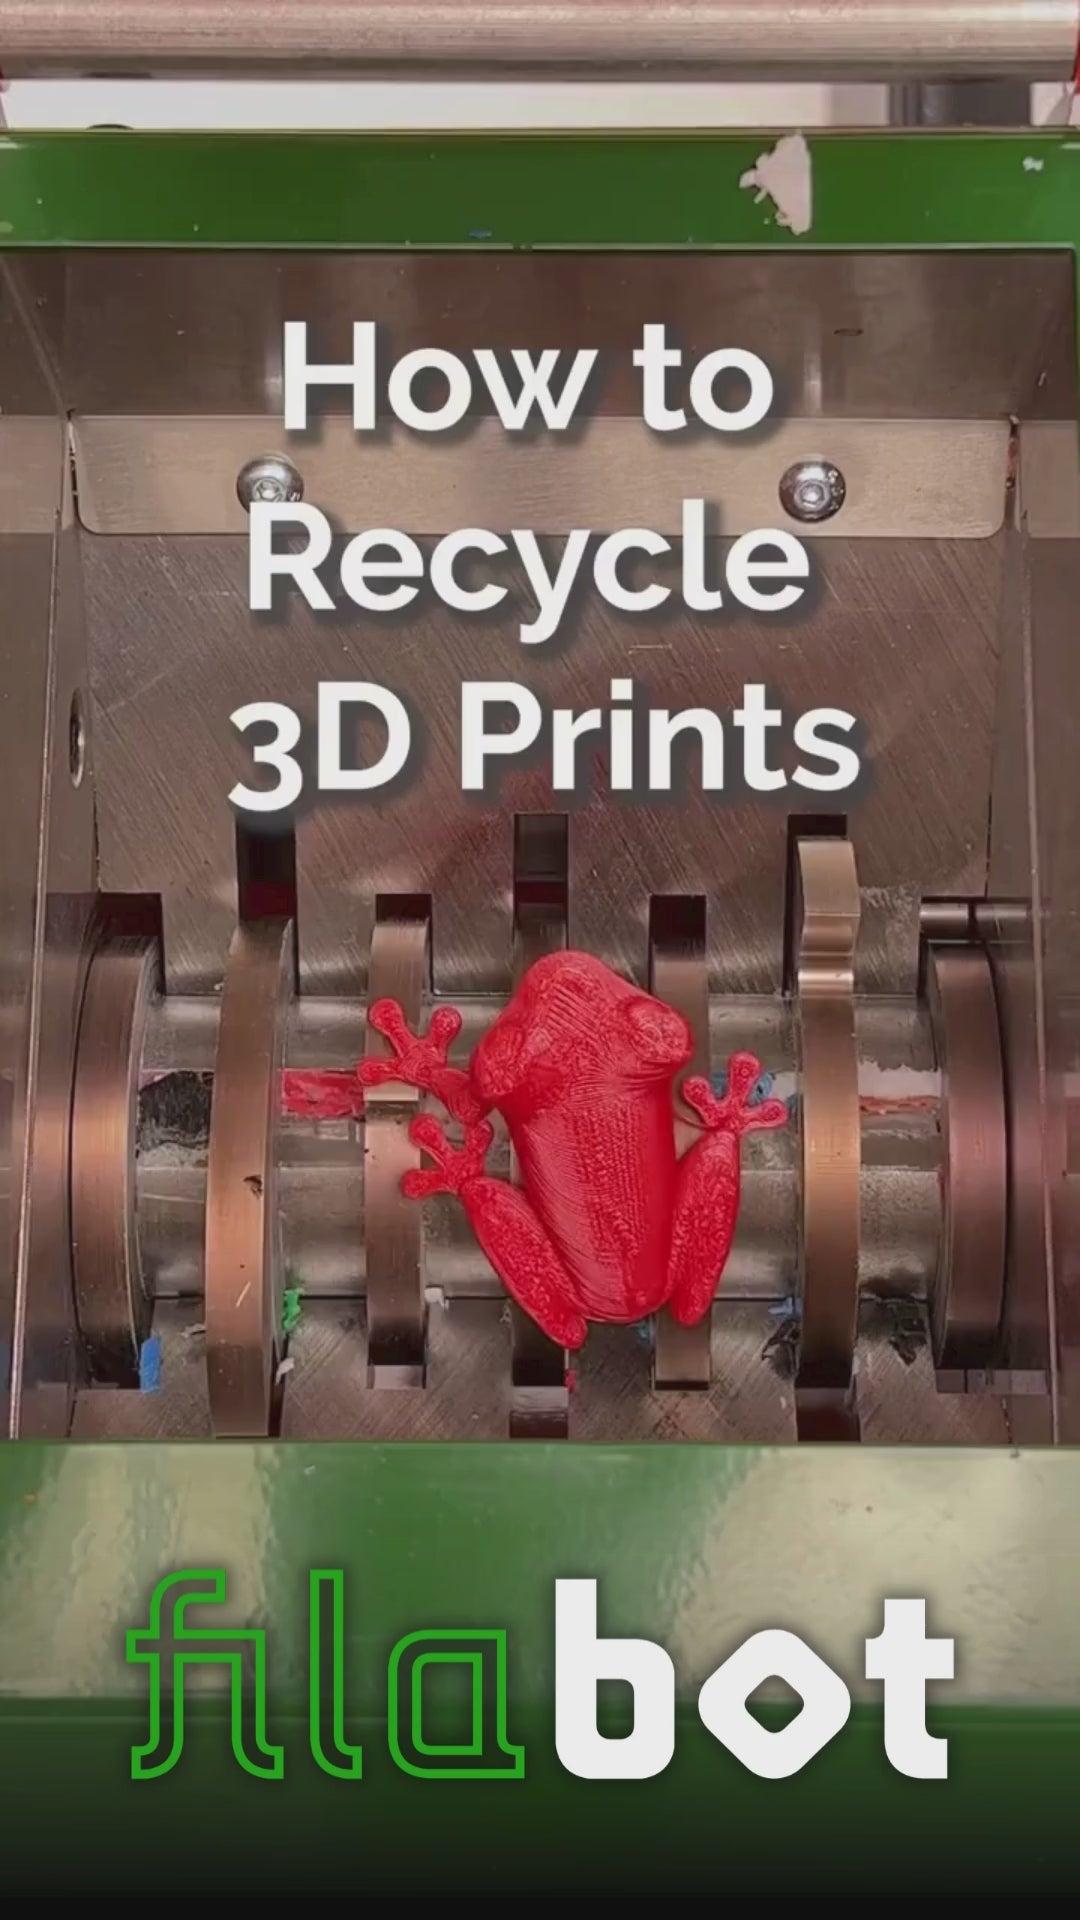 Full Recycling & 3D Printing Setup